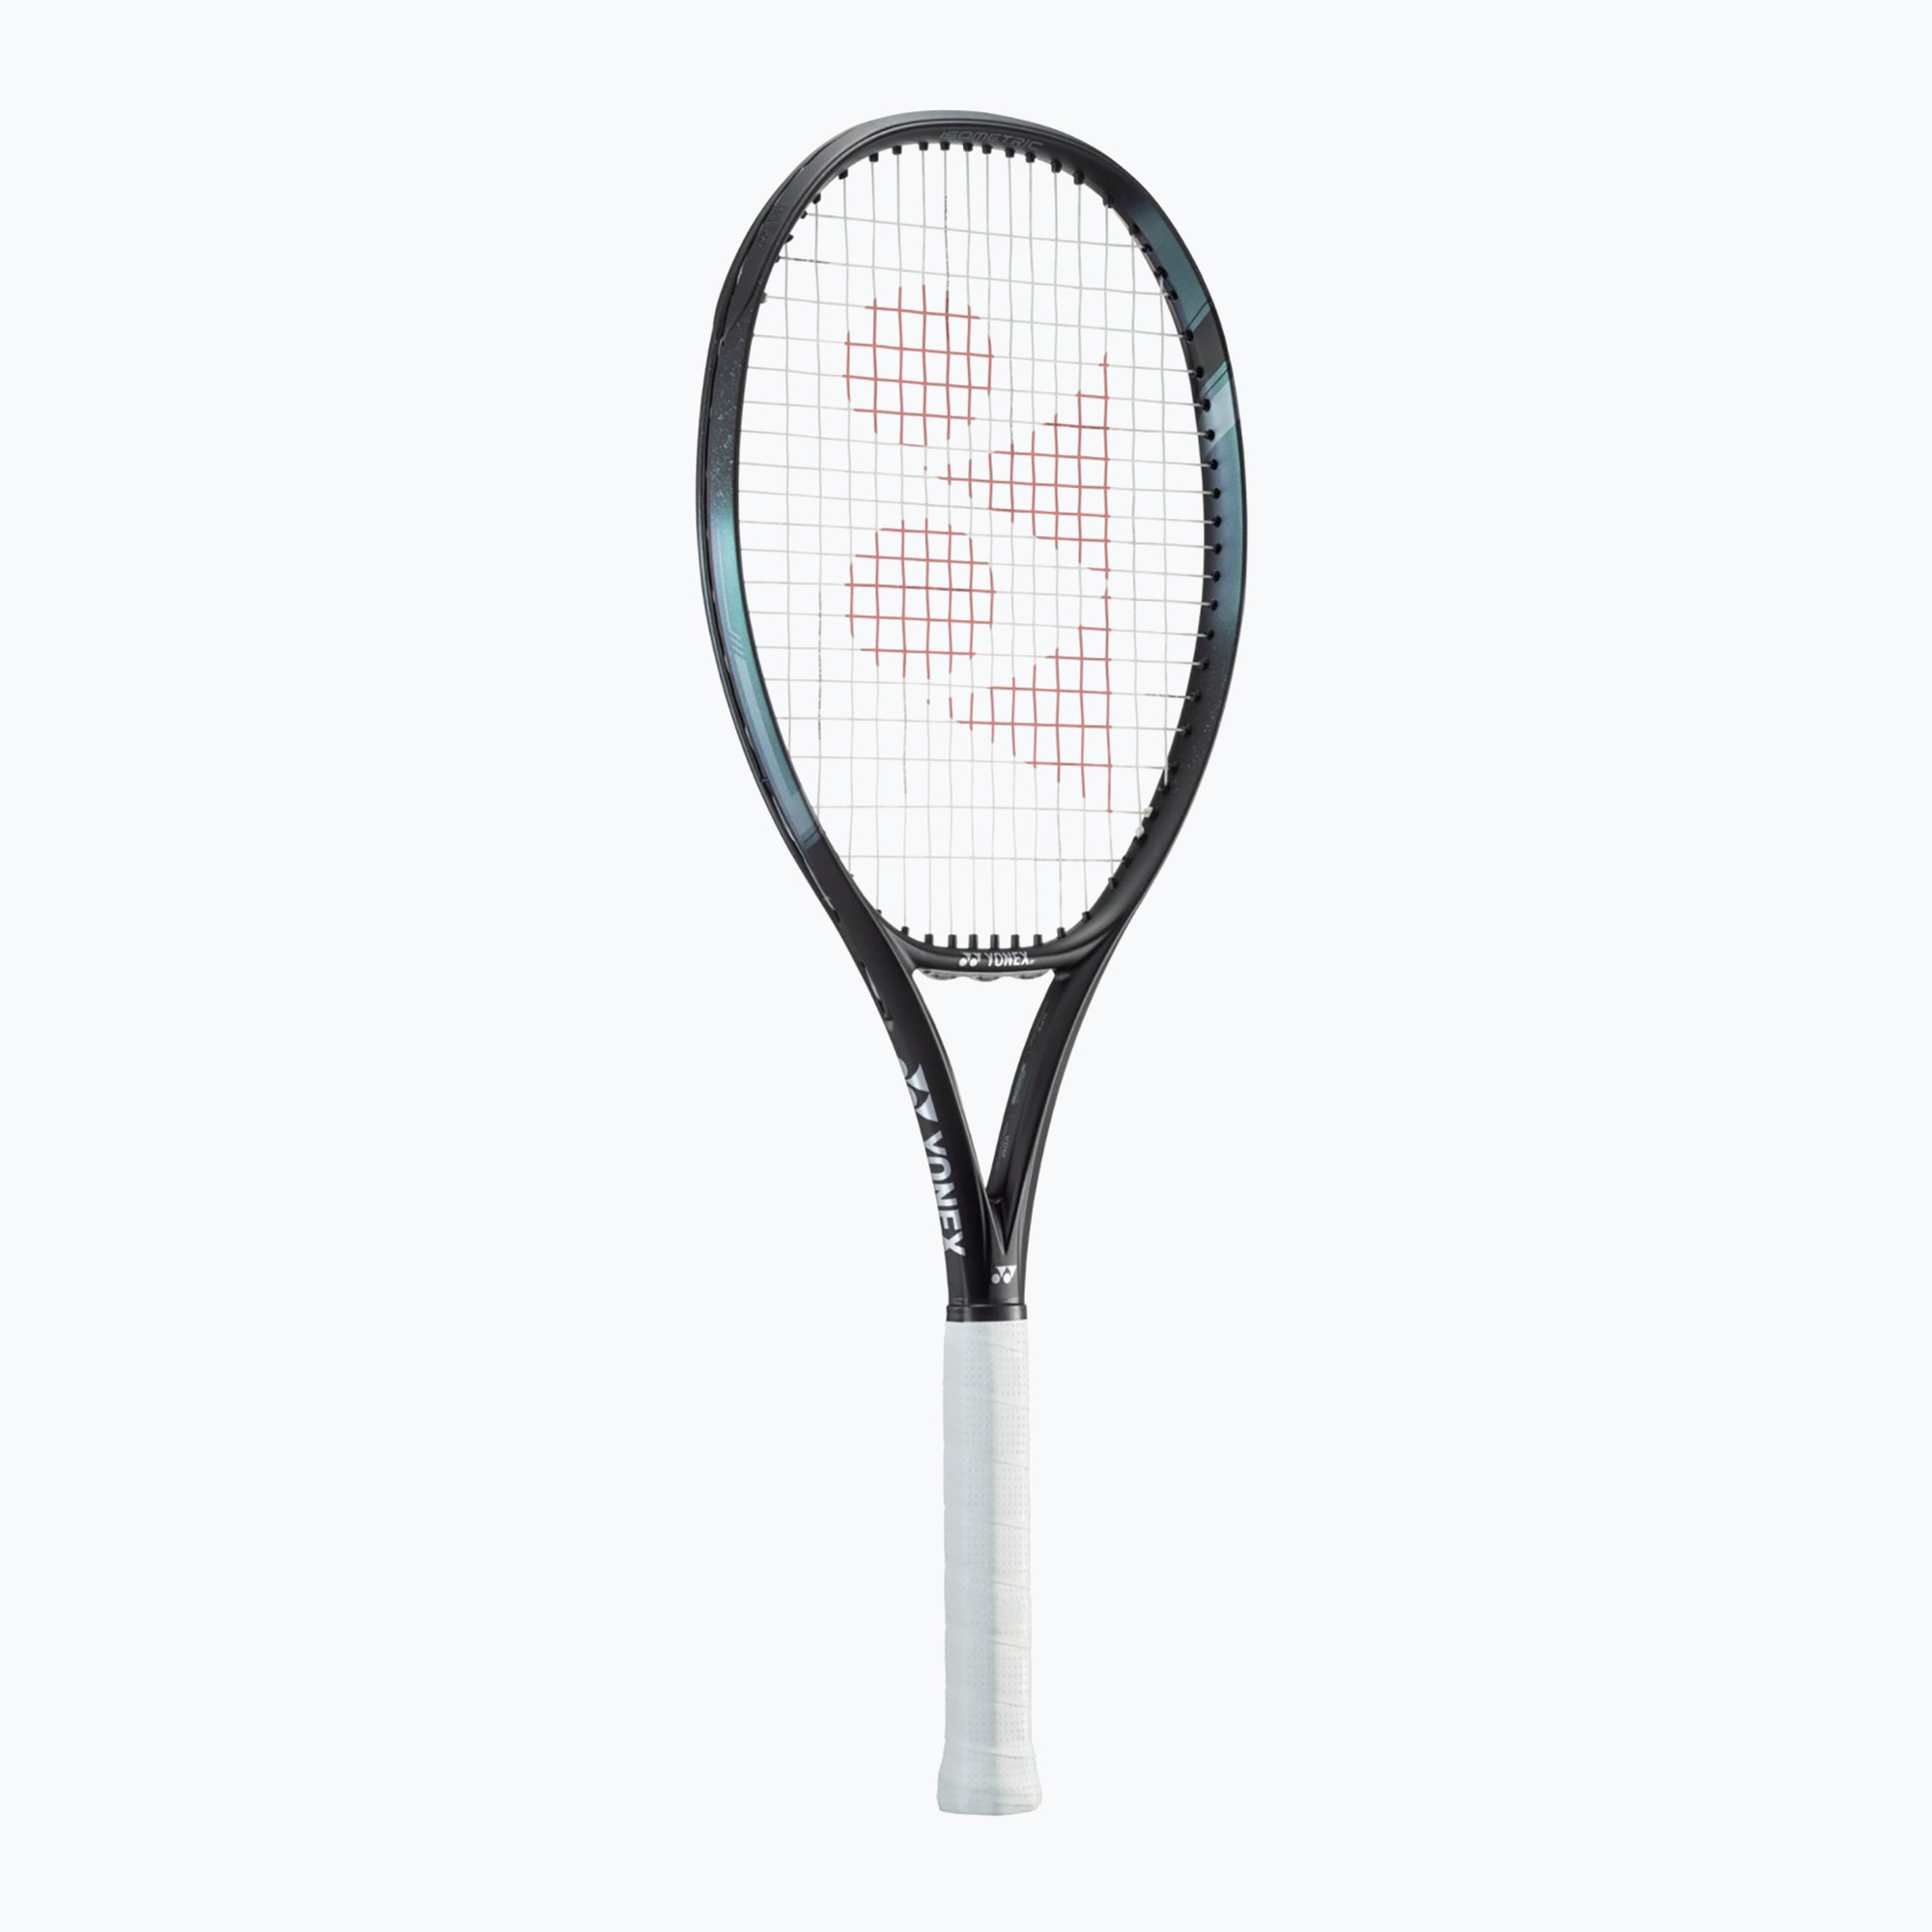 Rachetă de tenis YONEX Ezone 100 aqua/black